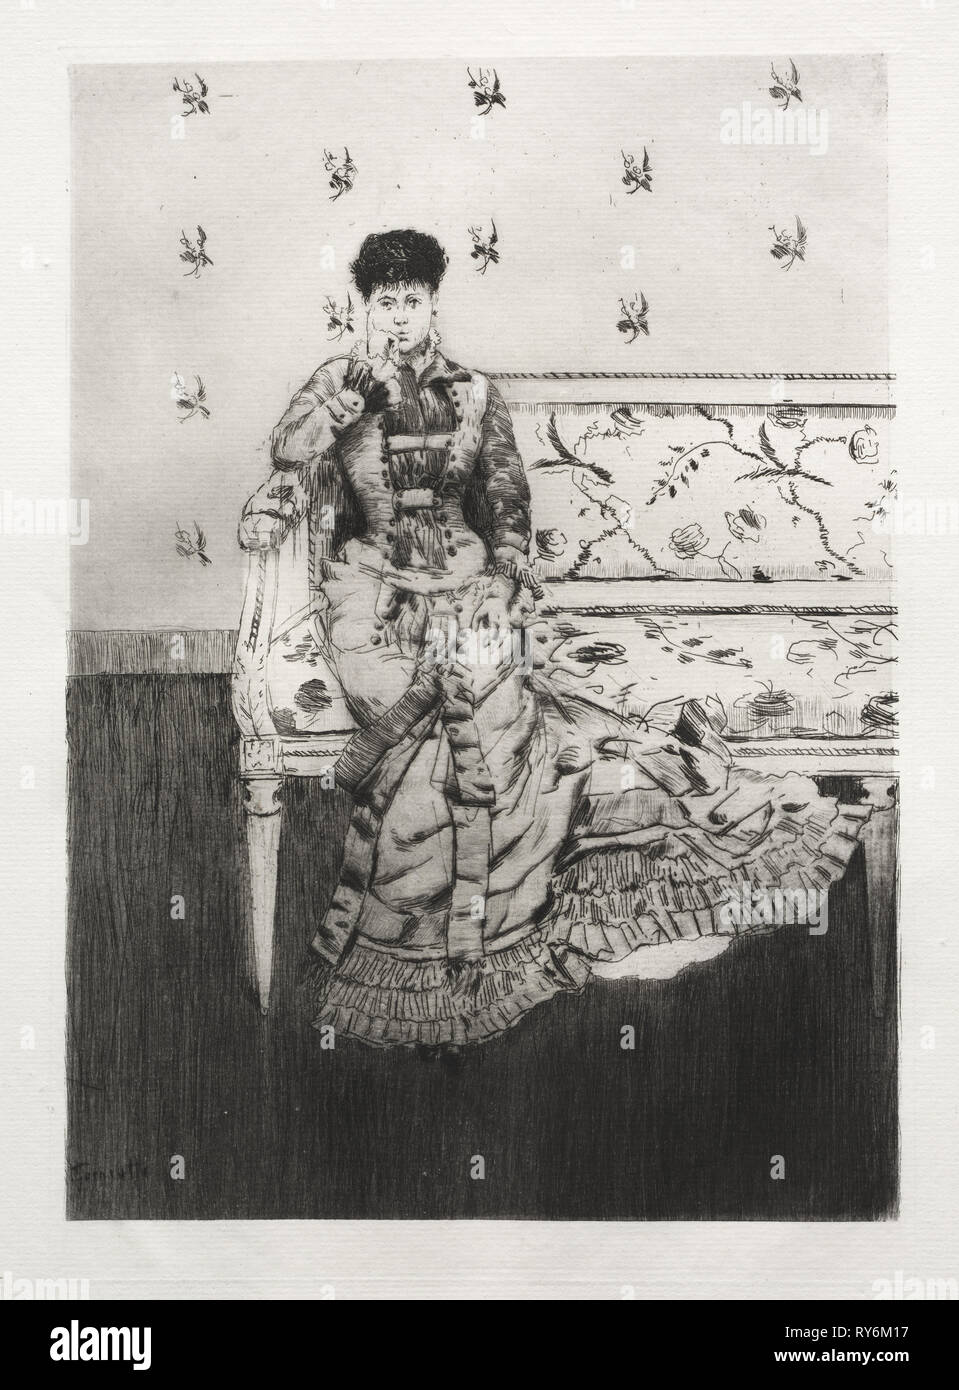 Fantaisie, 1877. Norbert Goeneutte (Français, 1854-1894). Fiche technique : eau-forte, 49,1 x 32,7 cm (19 7/8 x 12 5/16 in.) ; platemark : 29,4 x 20,7 cm (11 9/16 x 8 1/8 in Banque D'Images